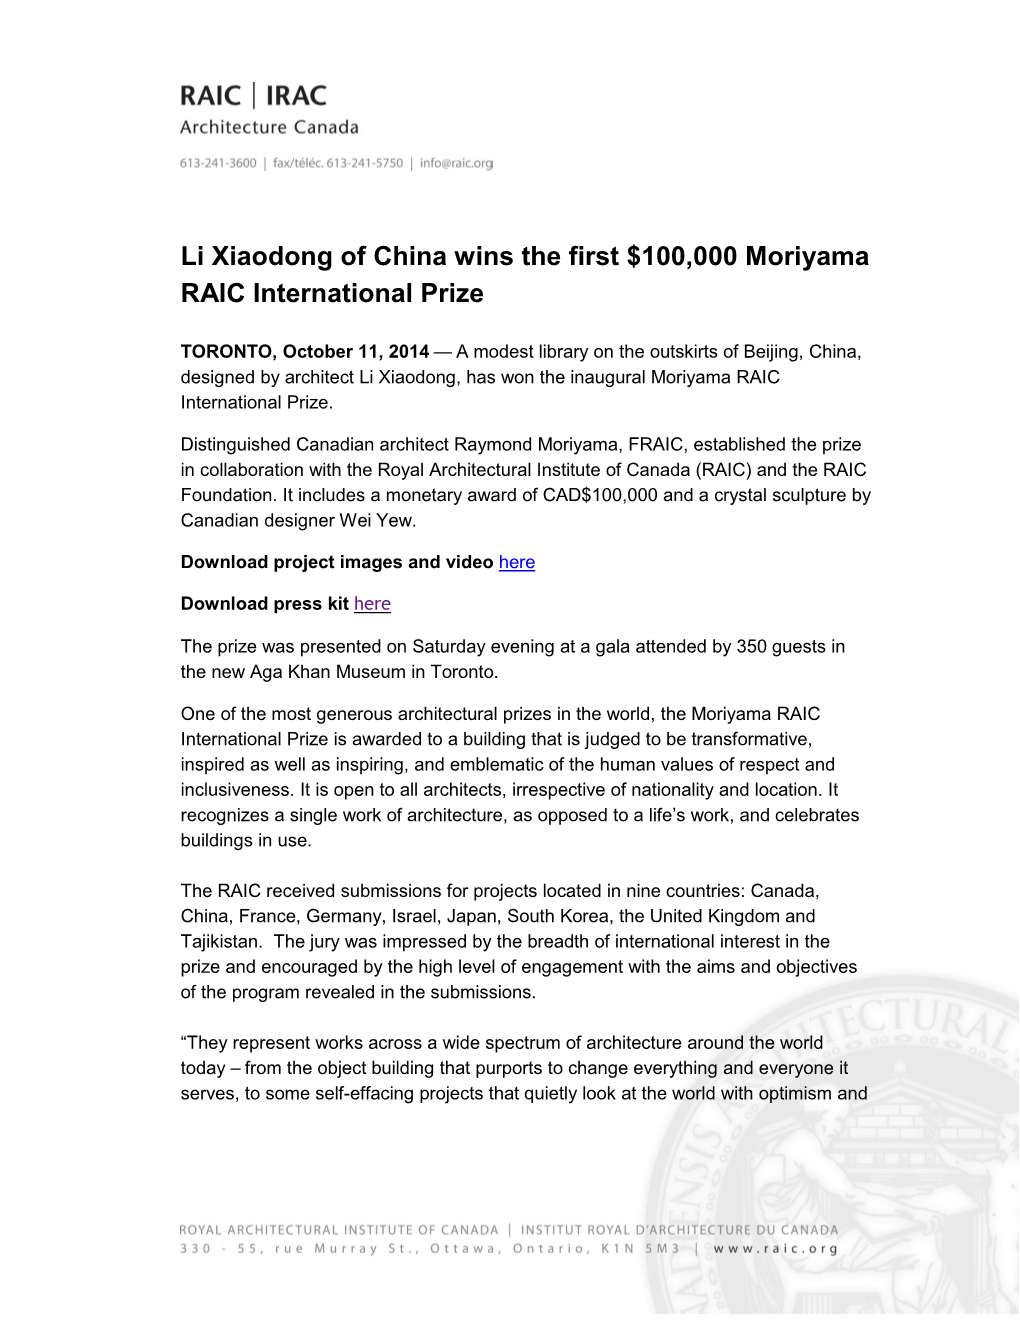 Li Xiaodong of China Wins the First $100,000 Moriyama RAIC International Prize